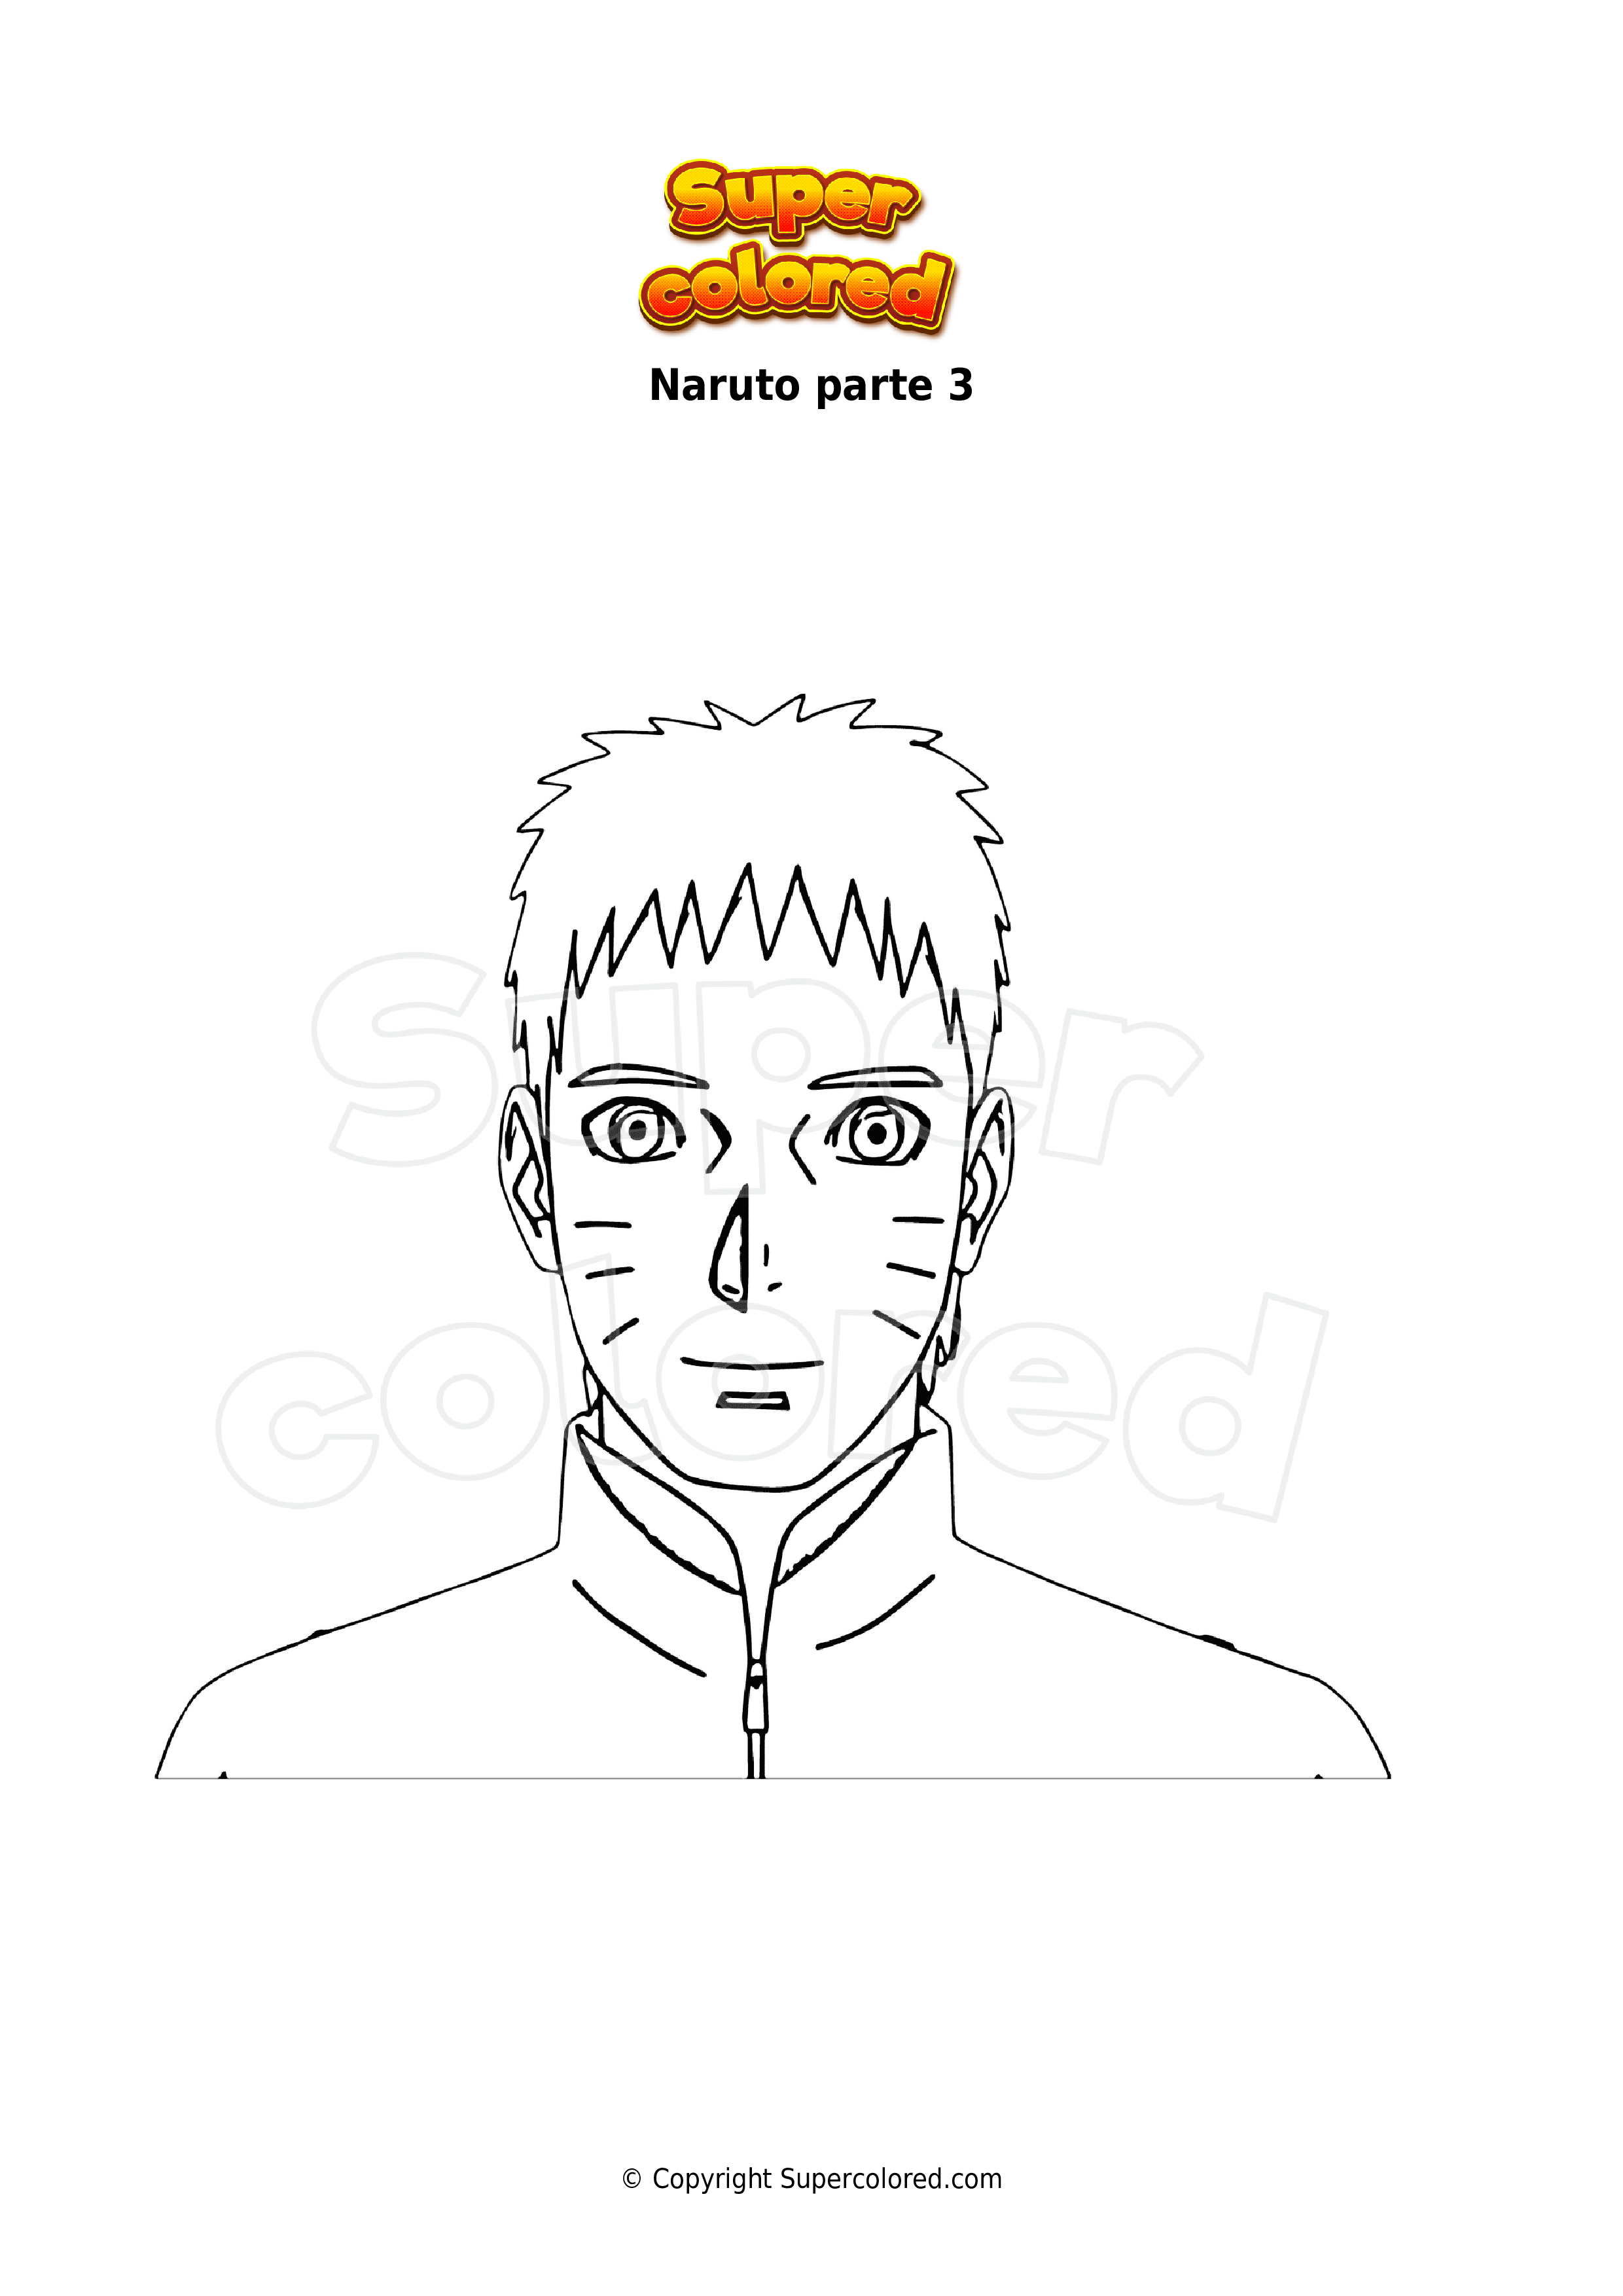 AhiVa PequeNautas  Plantillas para colorear  Personajes  Naruto